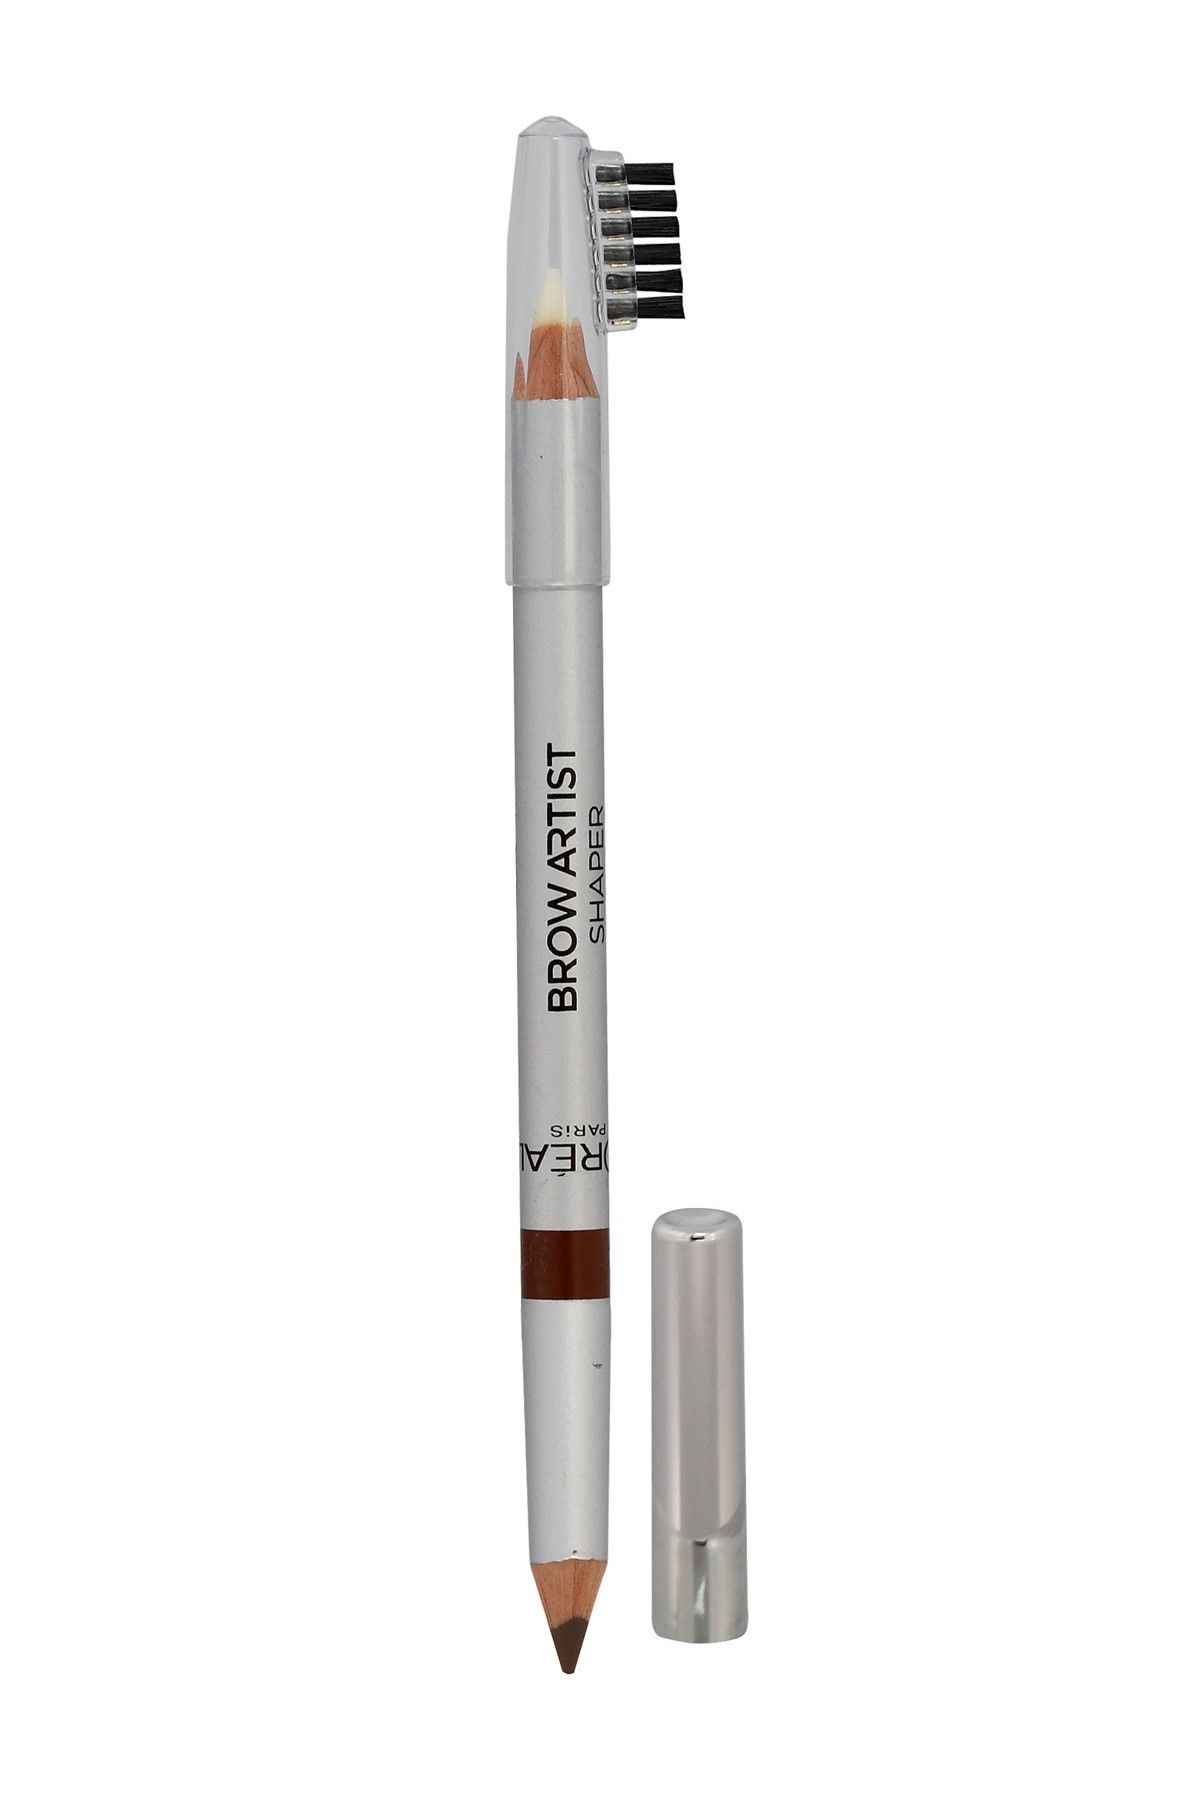 L'Oreal Paris مداد ابرو دو طرفه Brow Artist Shaper رنگ سفید و قهوه ای شماره 03